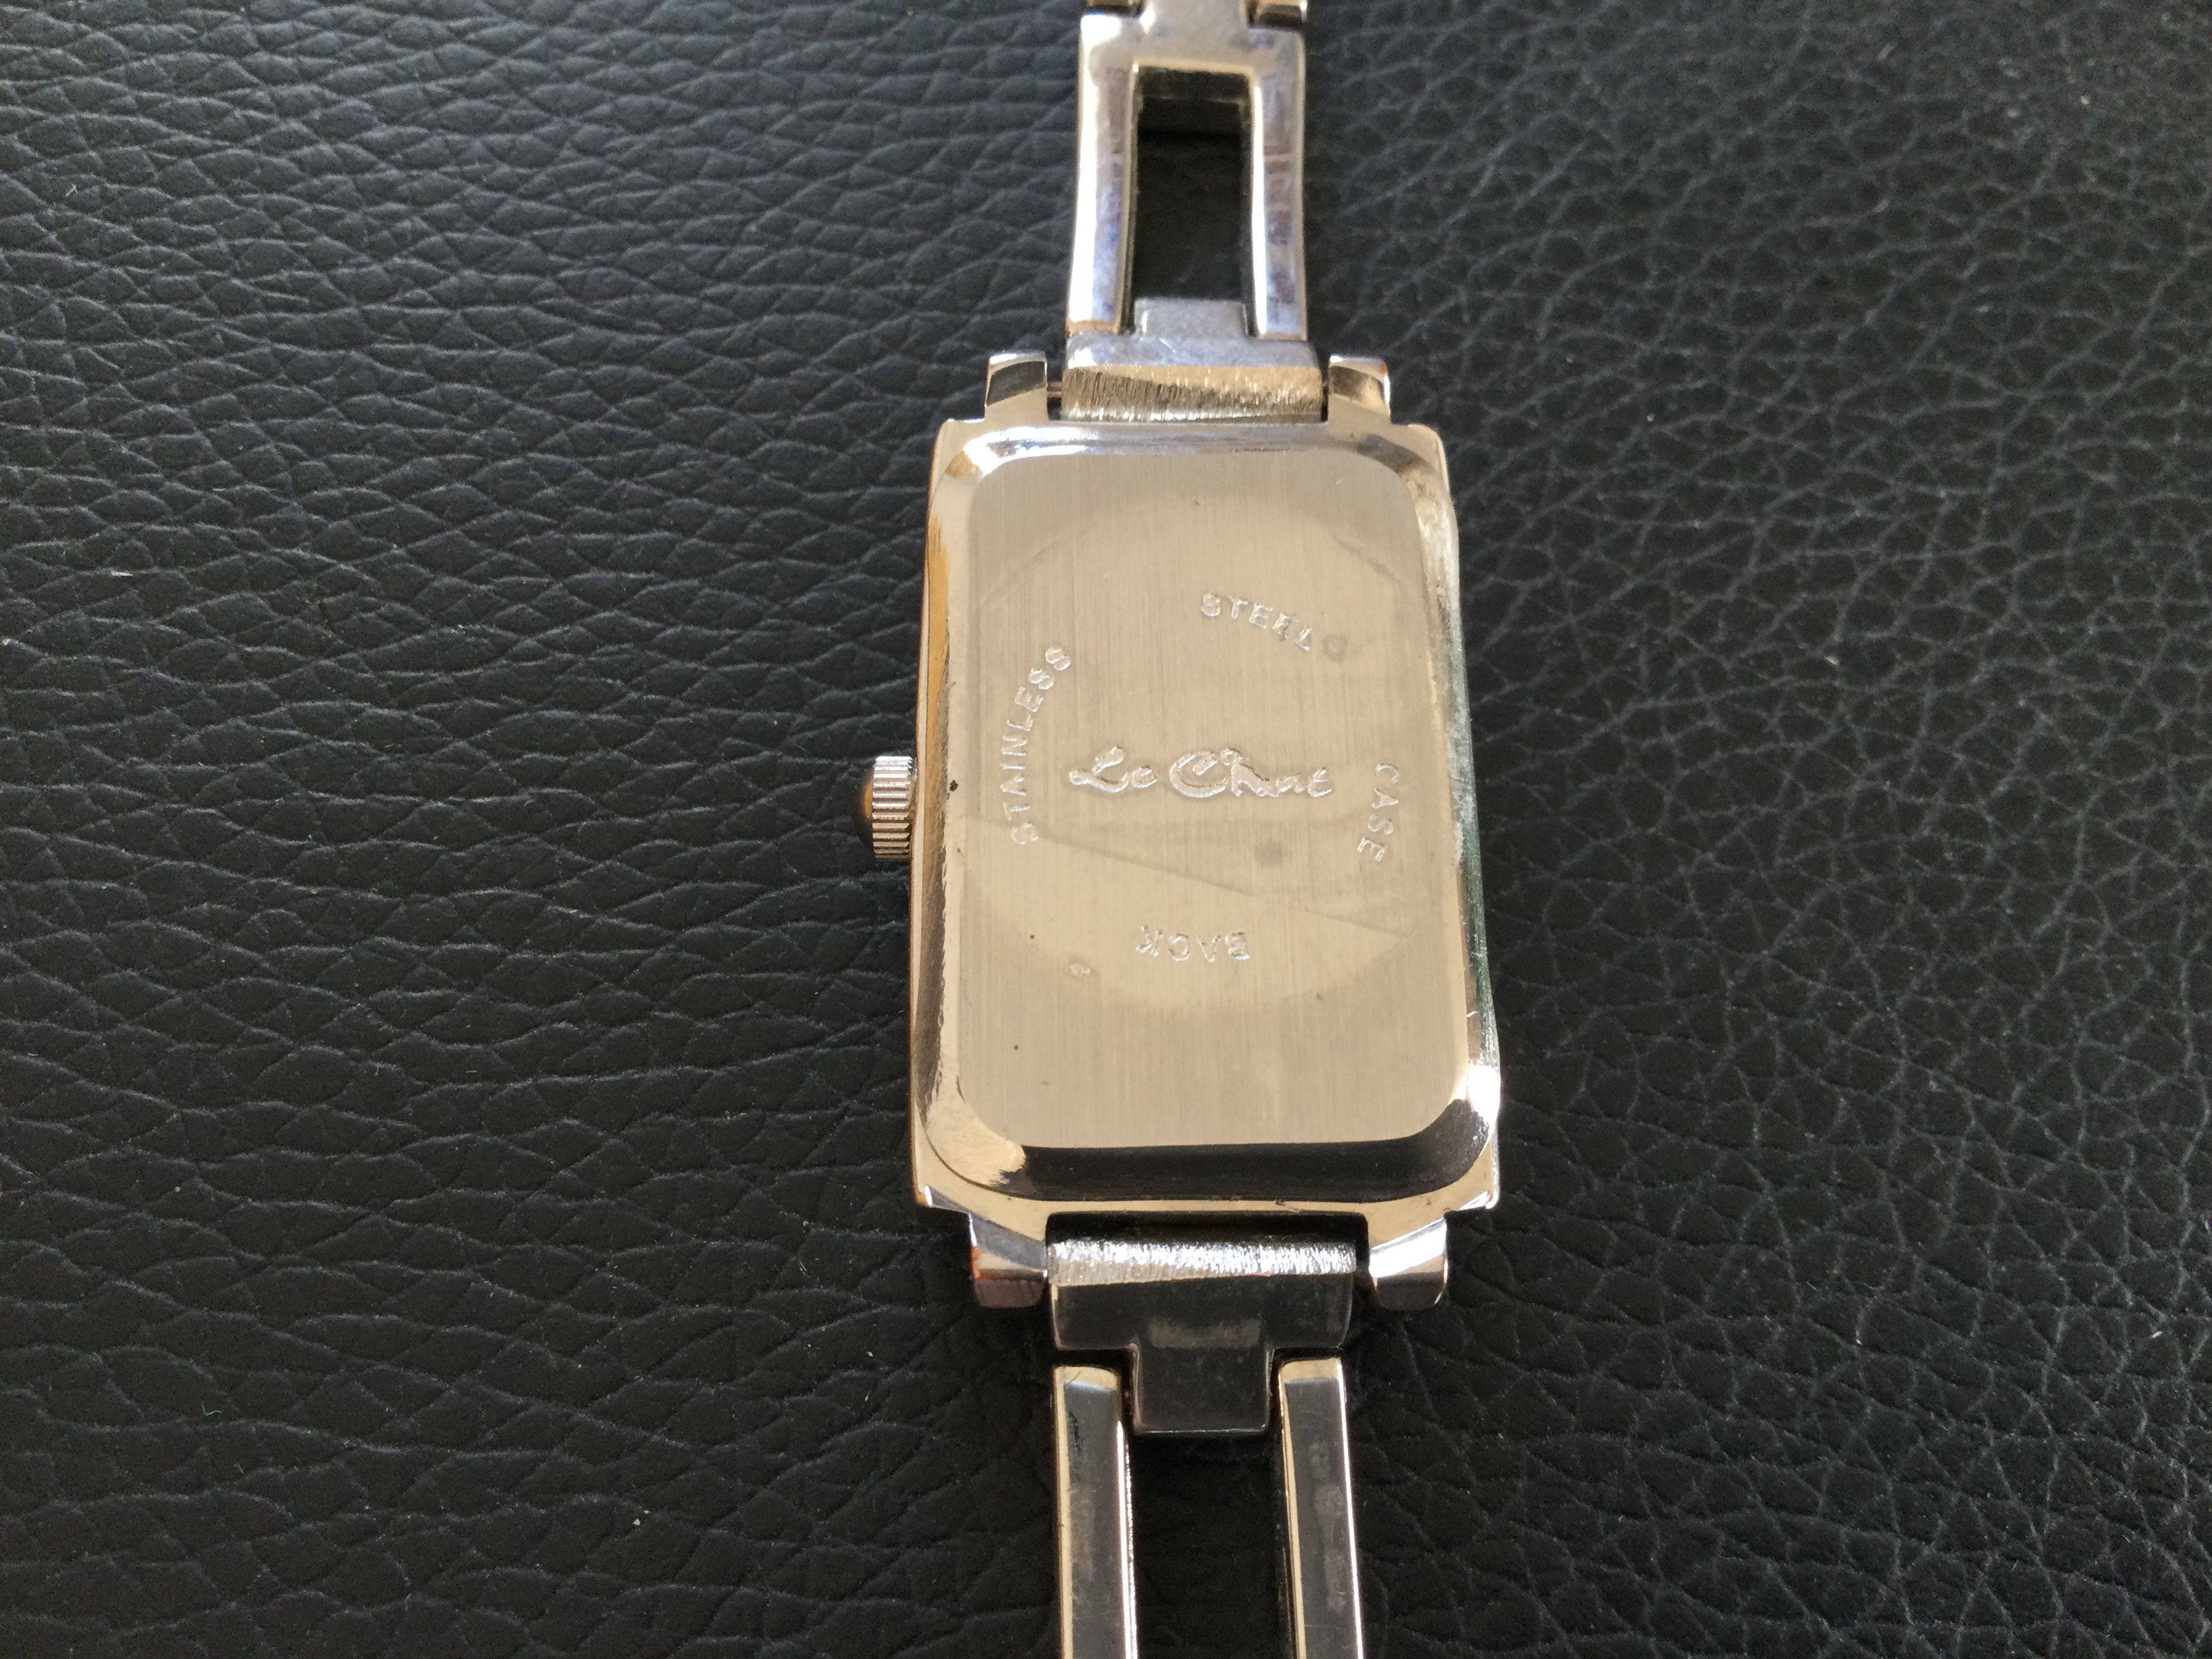 Le Chat Quartz Ladies Wristwatch (Gs16) - Image 5 of 5